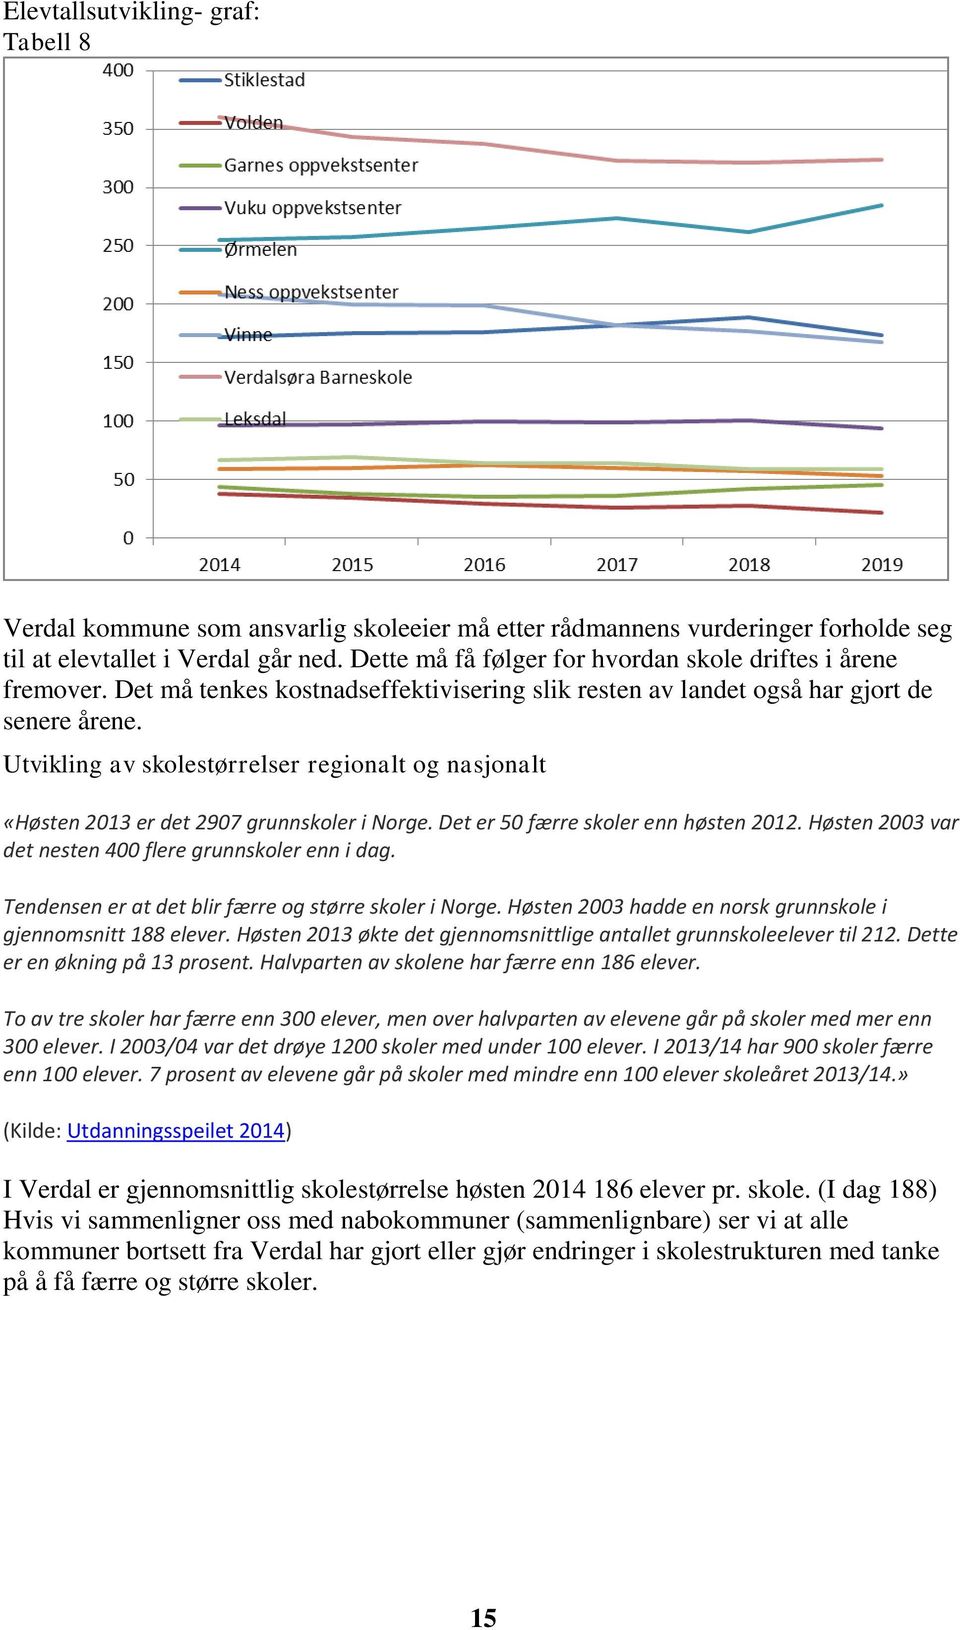 Utvikling av skolestørrelser regionalt og nasjonalt «Høsten 2013 er det 2907 grunnskoler i Norge. Det er 50 færre skoler enn høsten 2012. Høsten 2003 var det nesten 400 flere grunnskoler enn i dag.